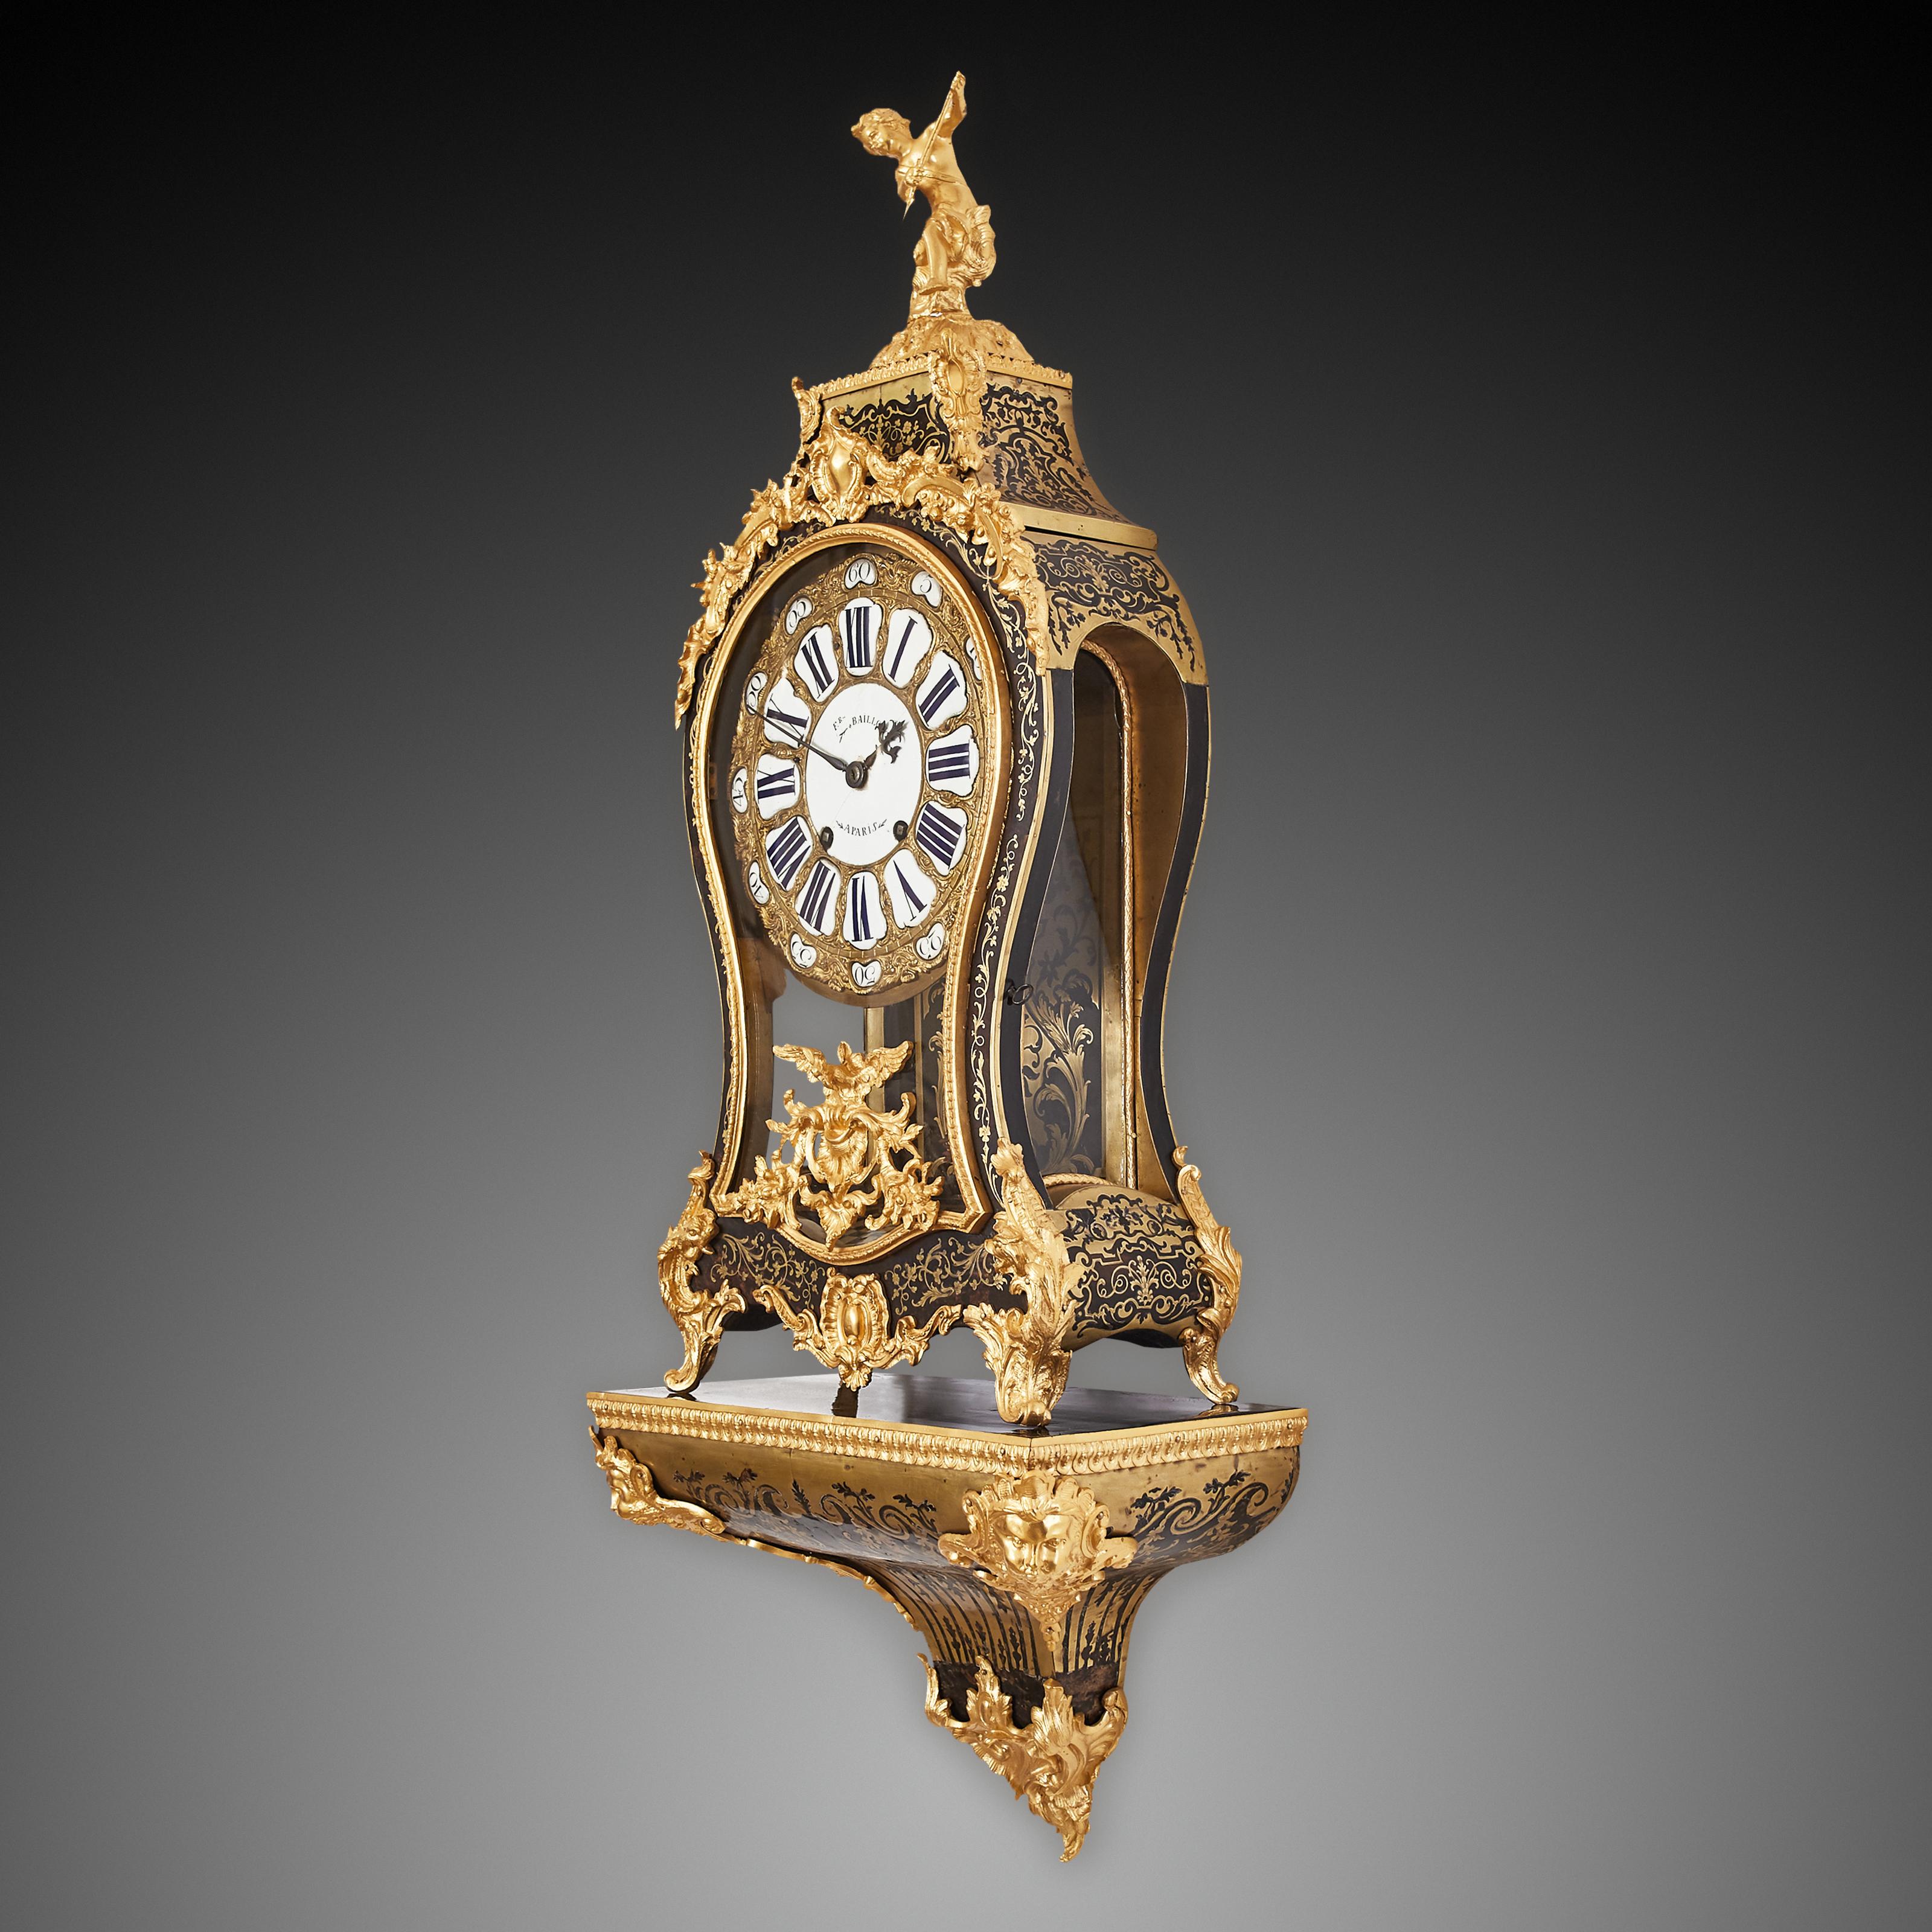 Cette magnifique horloge cantilever a été fabriquée en France au XVIIIe siècle sous le règne de Louis XV. La pendule présente de nombreux éléments décoratifs et caractéristiques du règne du prédécesseur de Louis XV, lorsque les œuvres de Calle